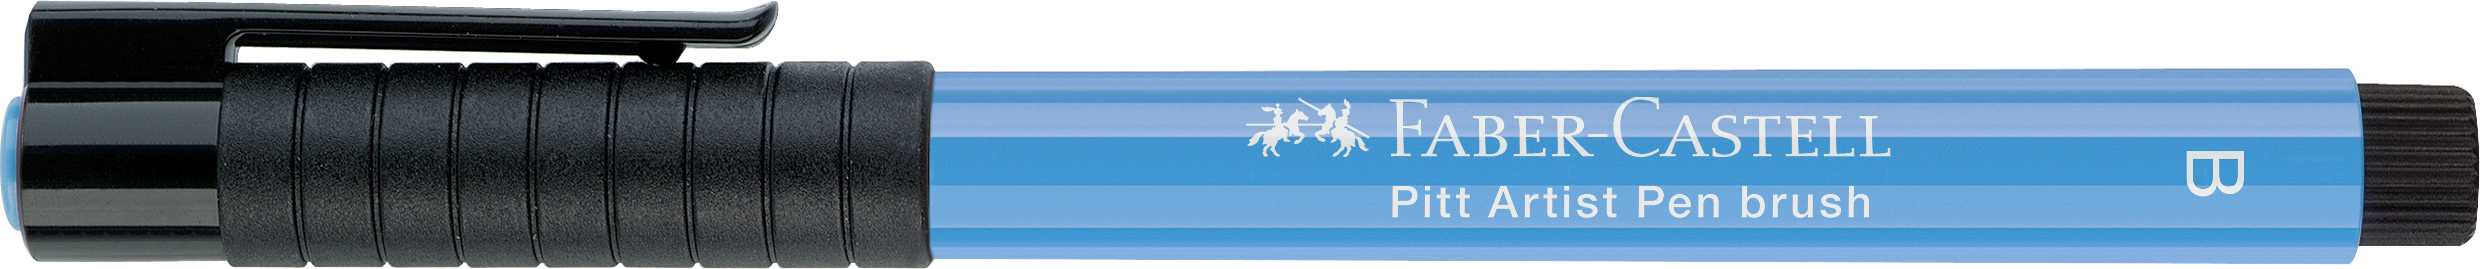 FABER-CASTELL Pitt Artist Pen Brush 2.5mm 167446 sky blue